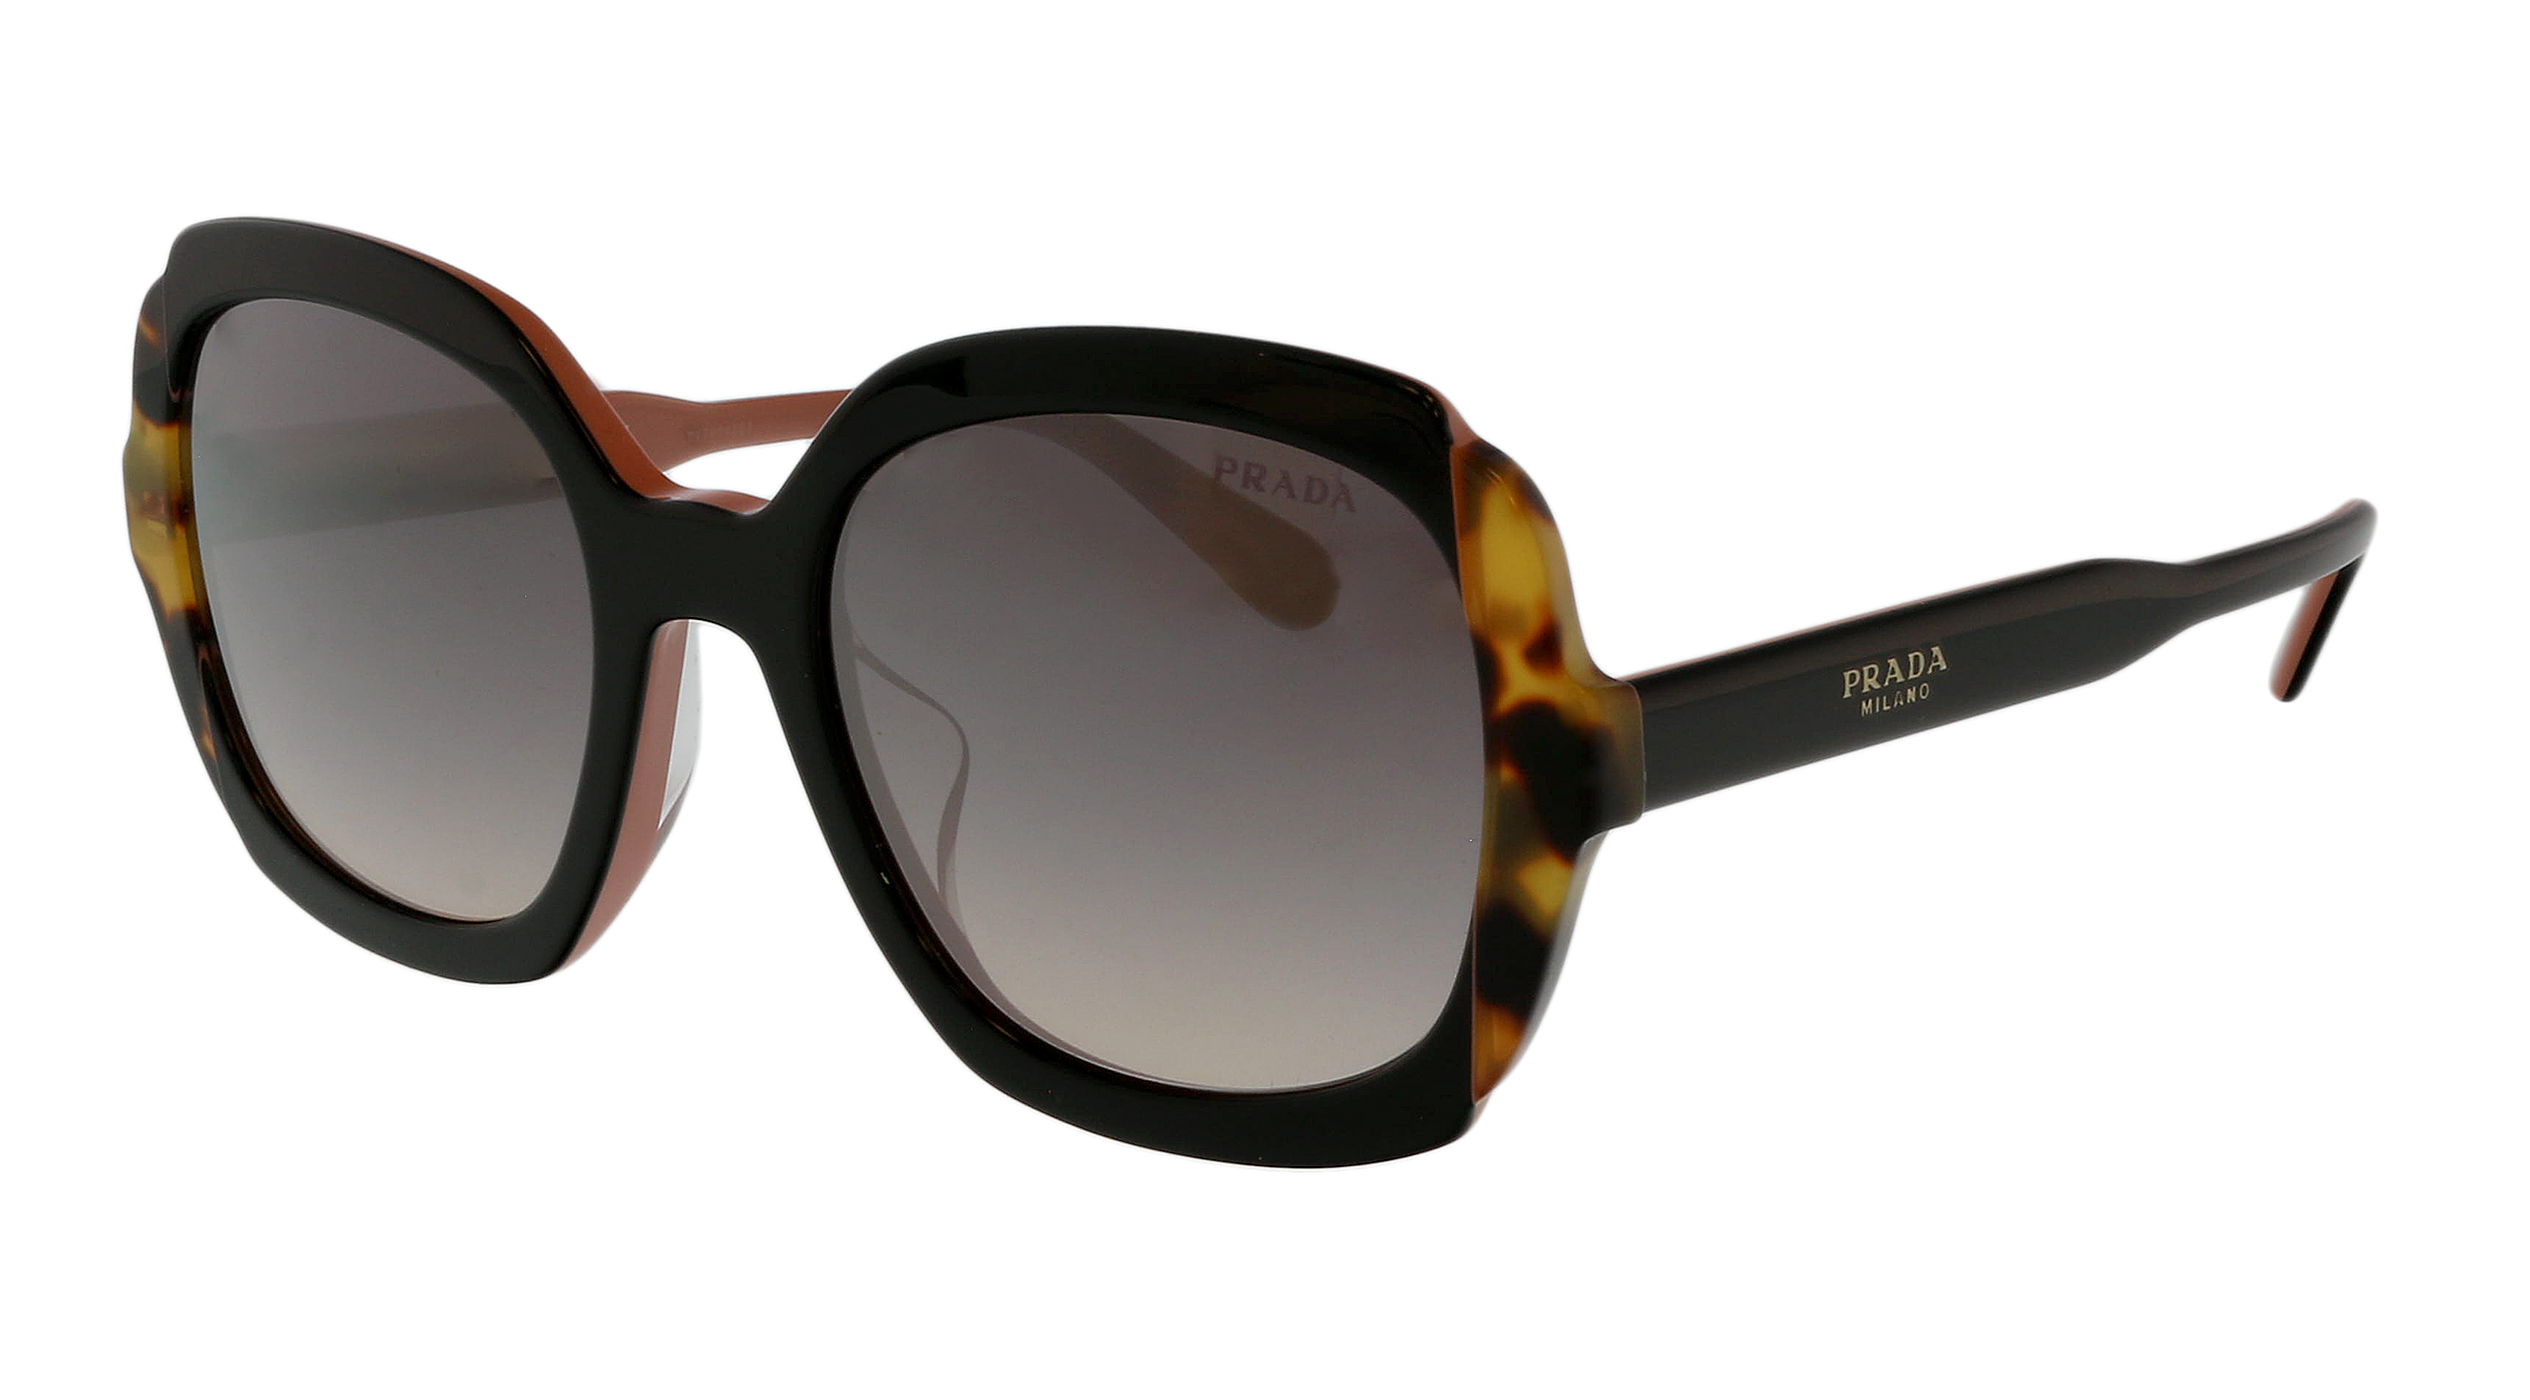 Prada Square Sunglasses Black/Dark Grey (SPRA01 16K-0 8Z)